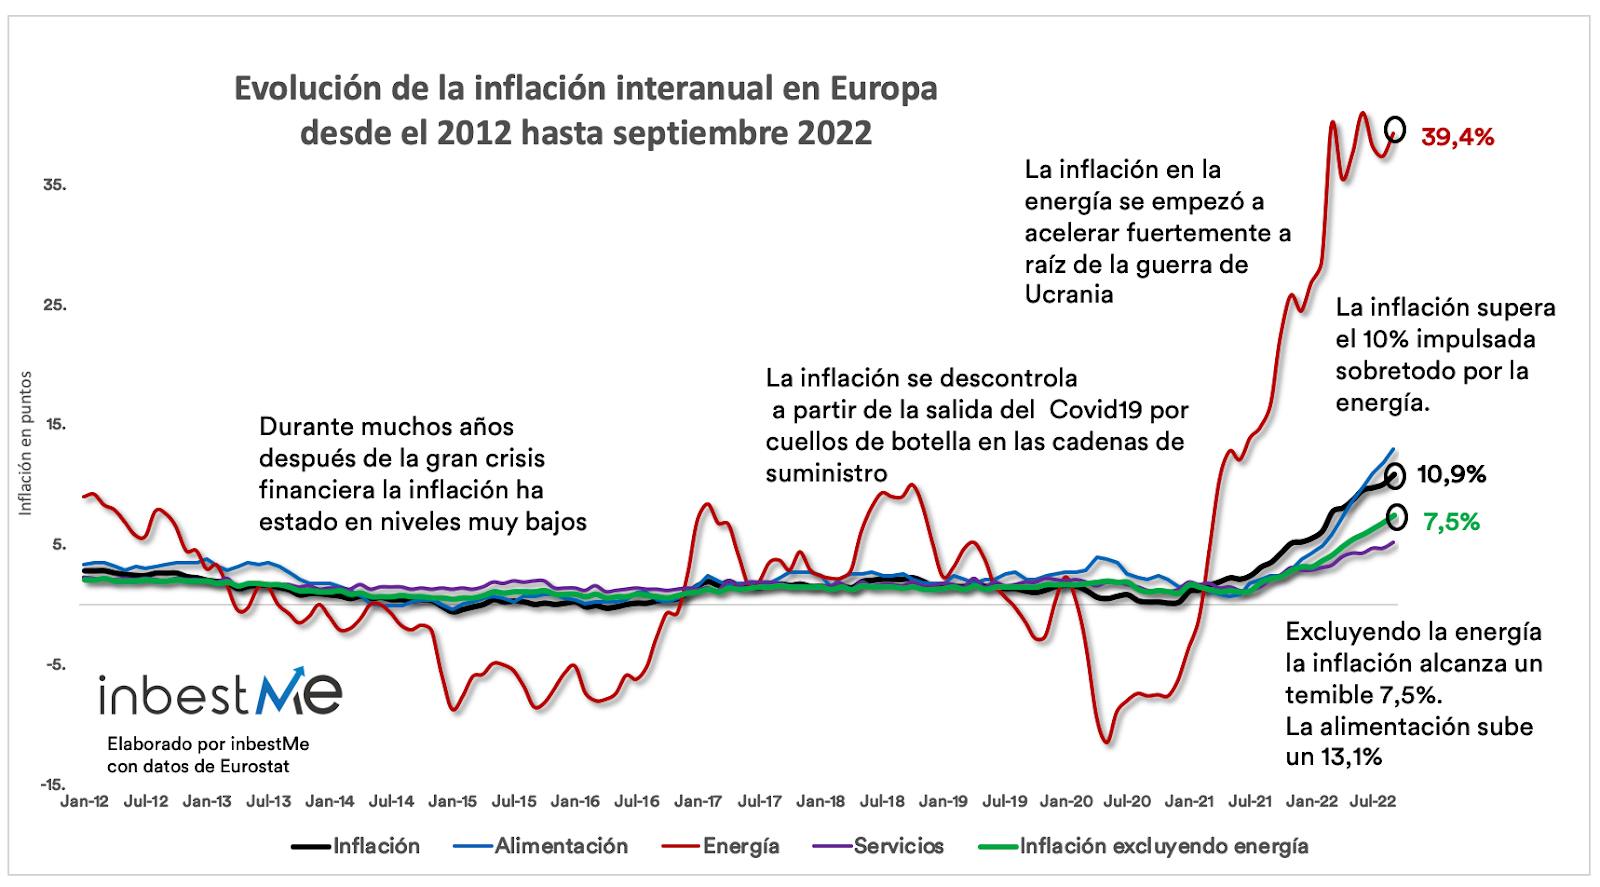 Evolución de la inflación interanual en Europa desde el 2012 hasta septiembre 2022